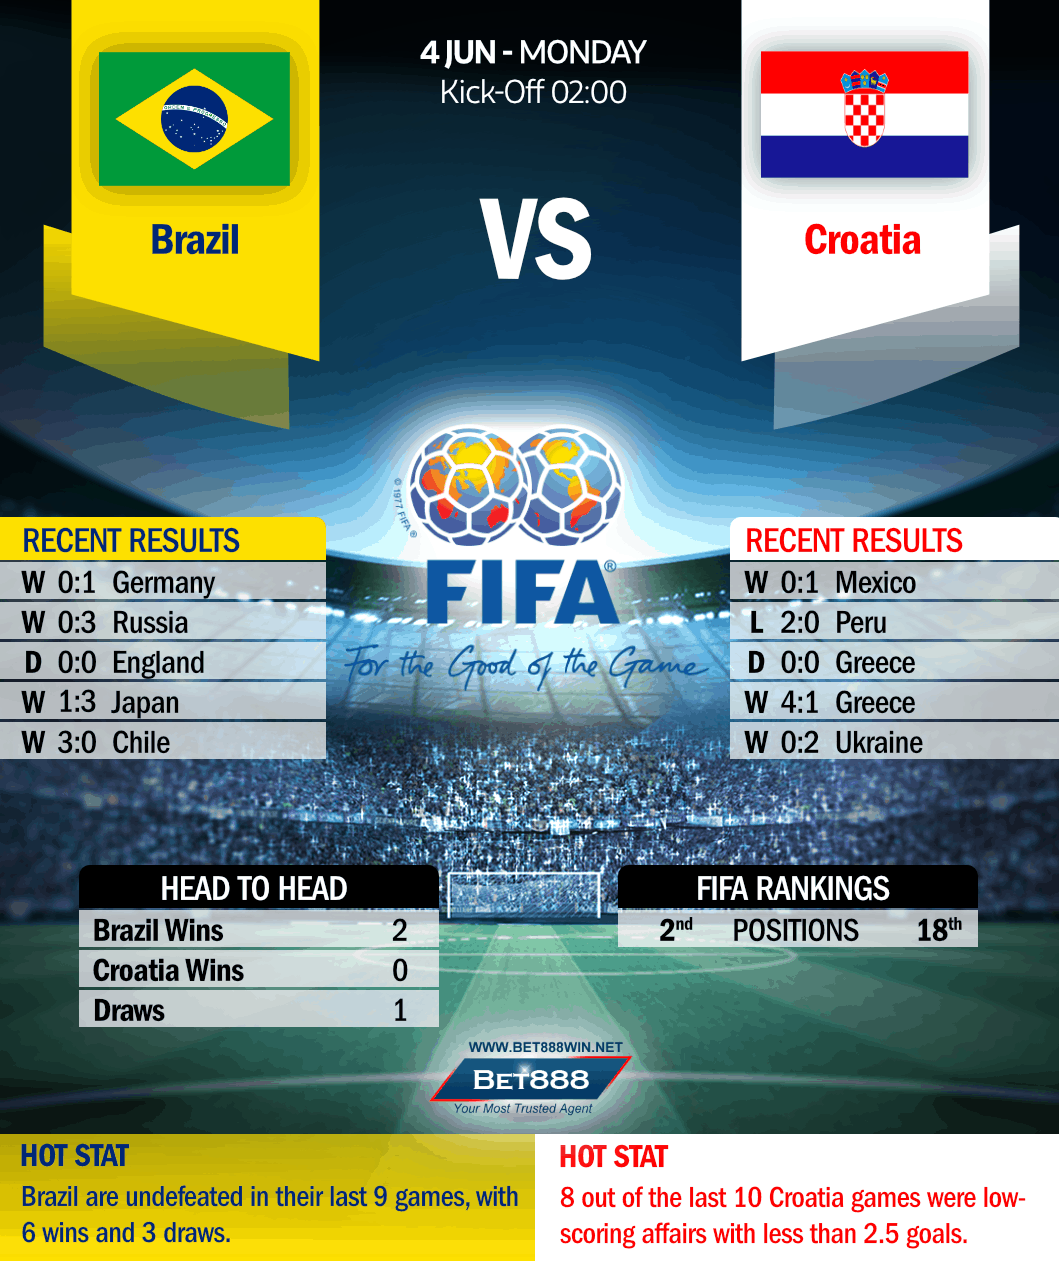 Brazil vs Croatia 04/06/18